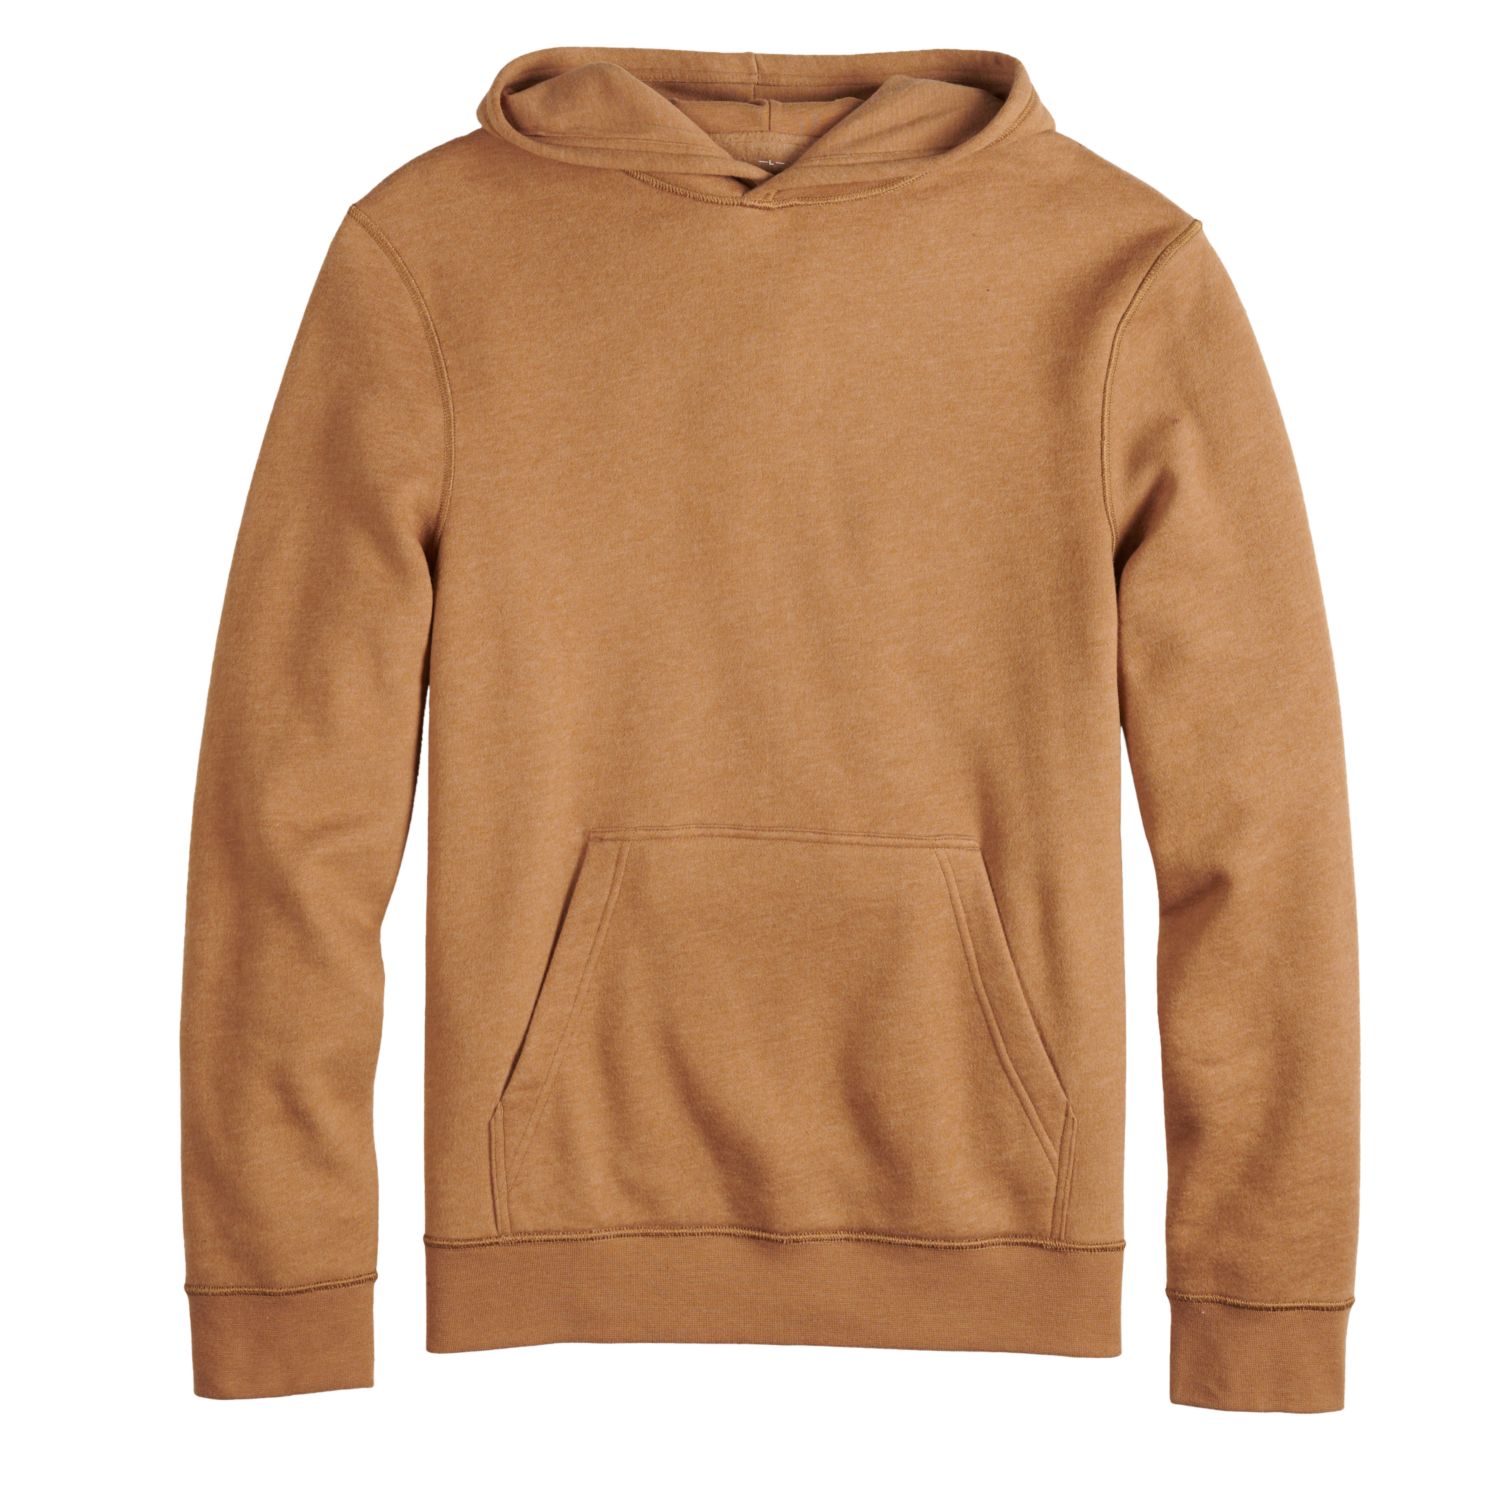 brown hoodies